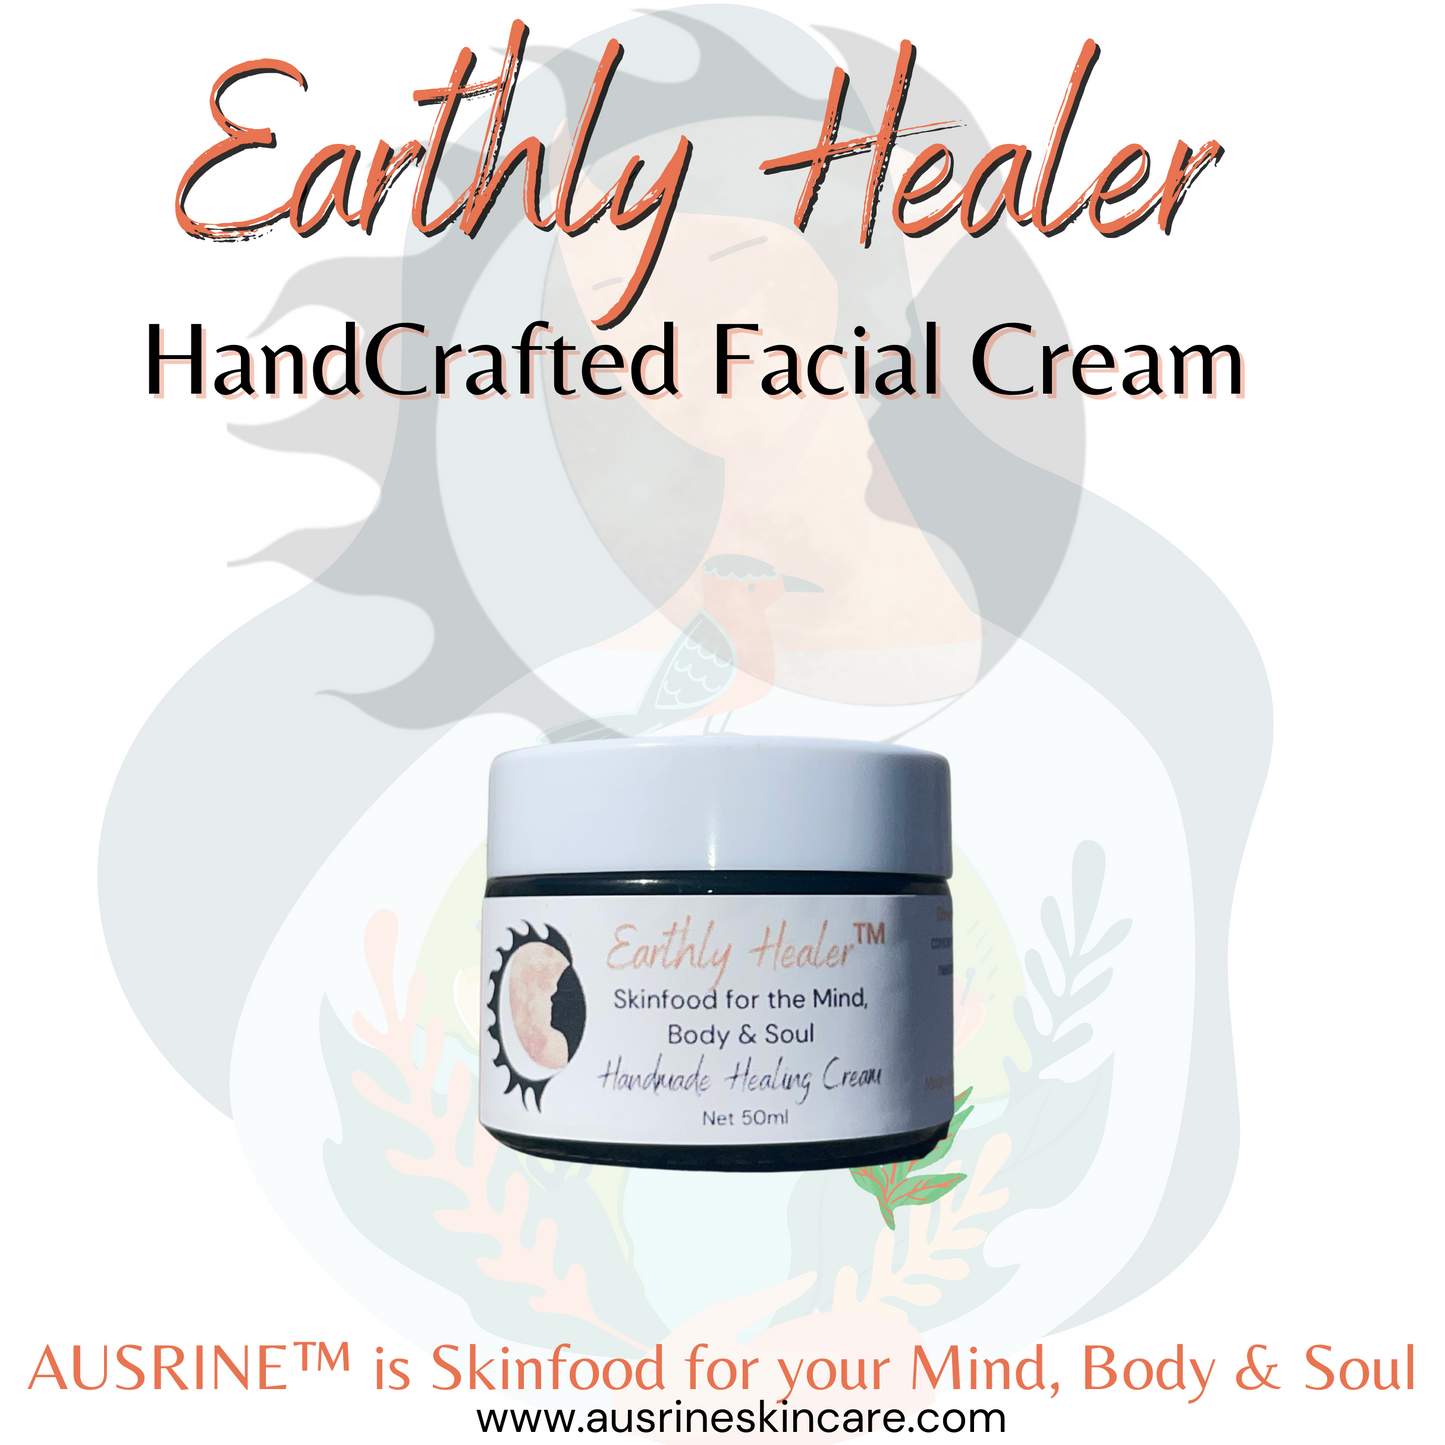 Earthly Healer™ Ultra-Calming Healing Cream